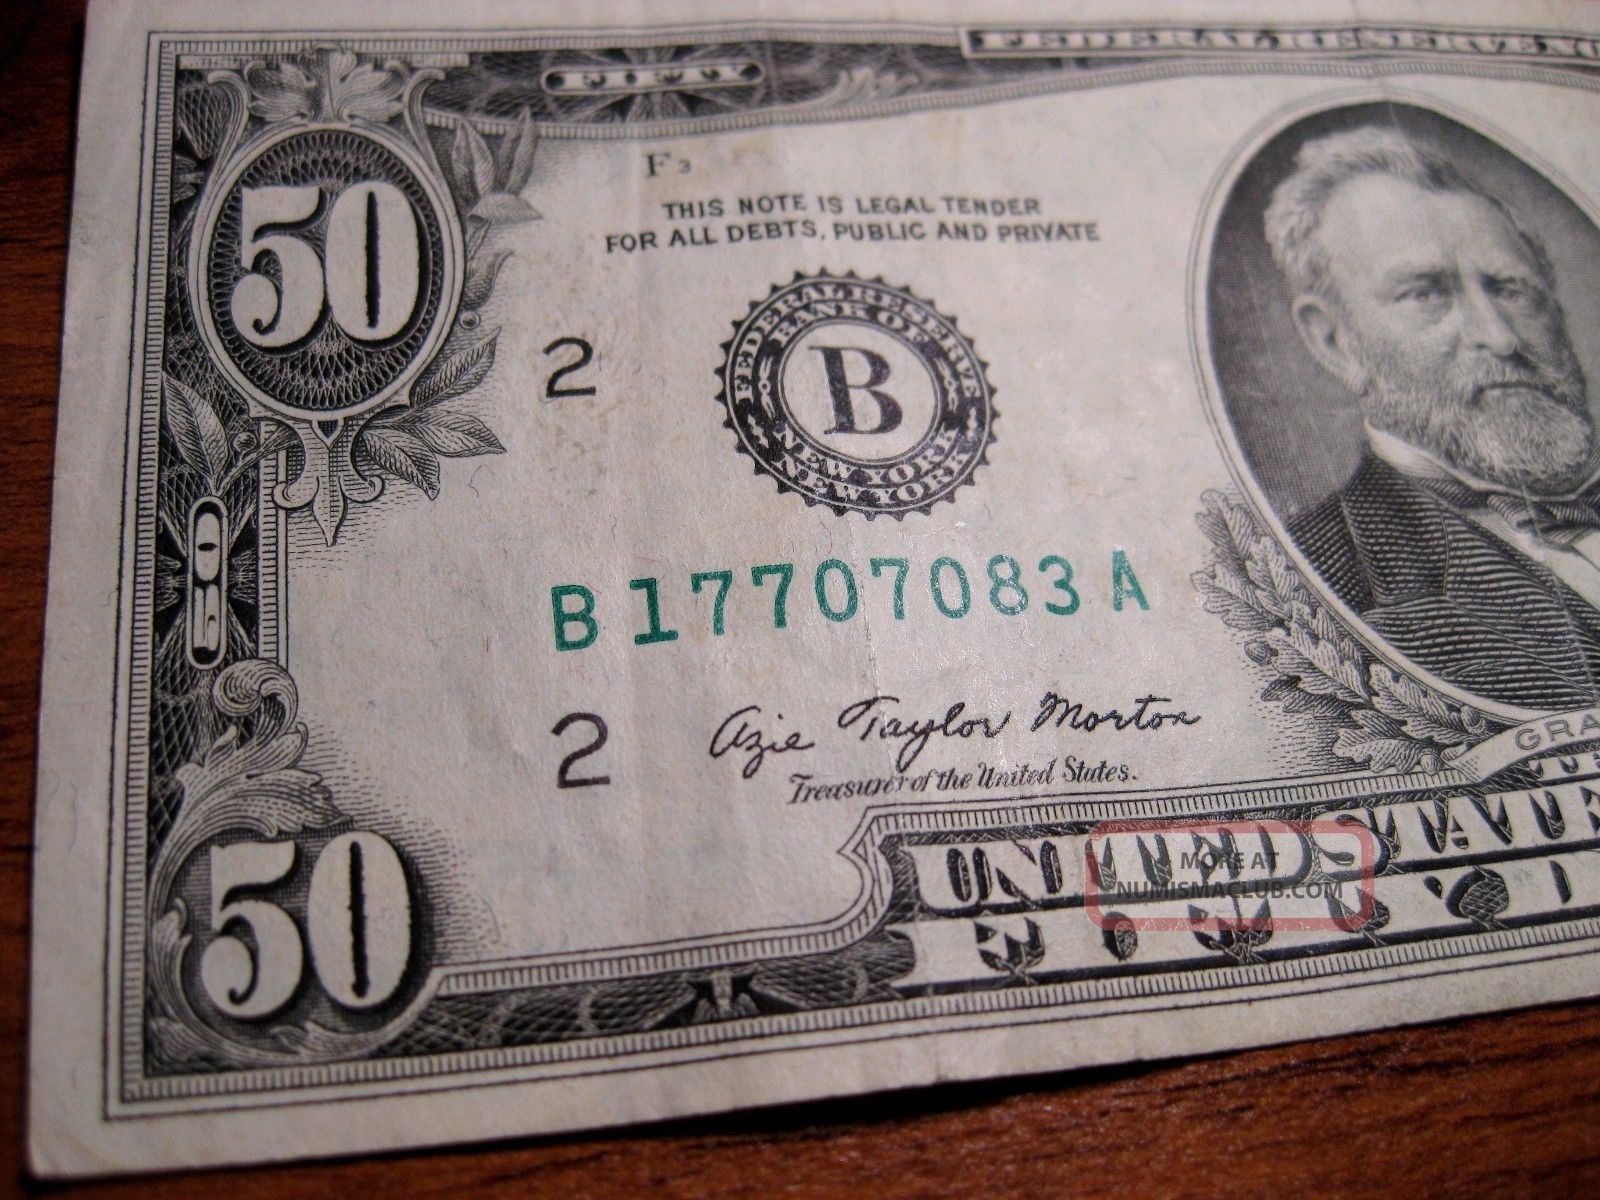 1977 50 Dollar Bill - York1600 x 1200